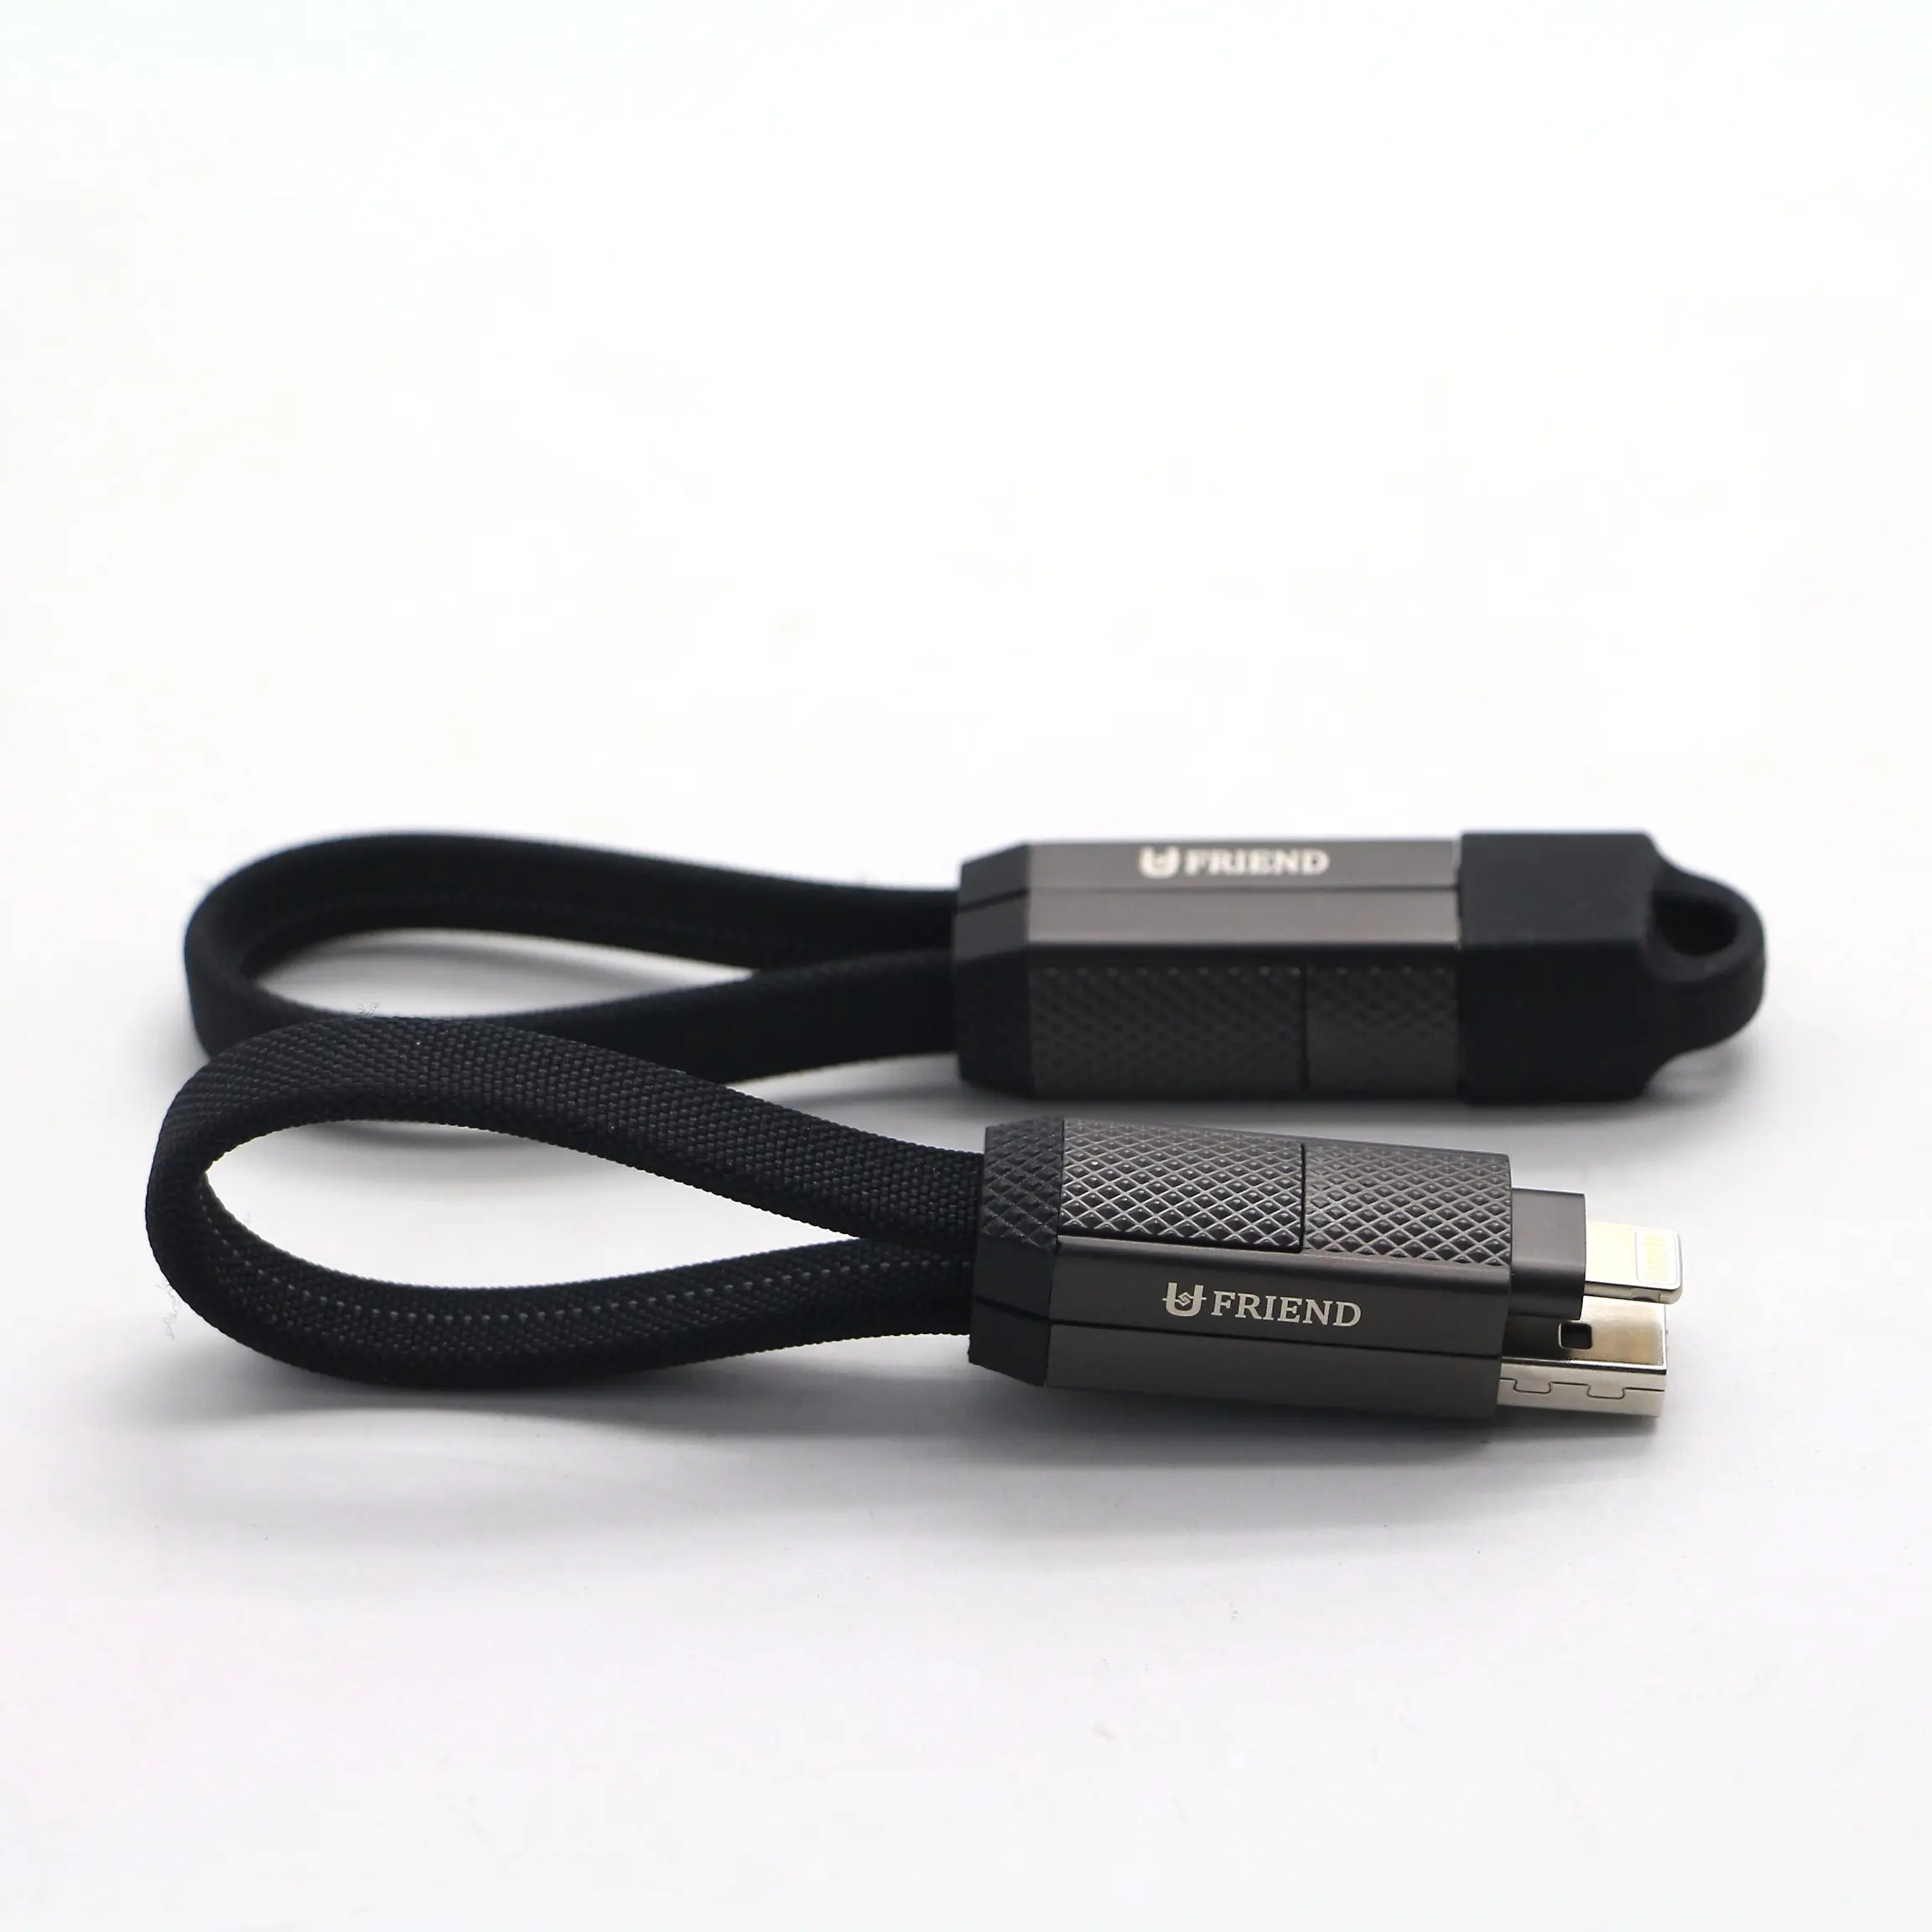 Conveniente cabo de carregamento rápido retrátil 4 em 1 de alta qualidade USB 2.0 para todos os telefones